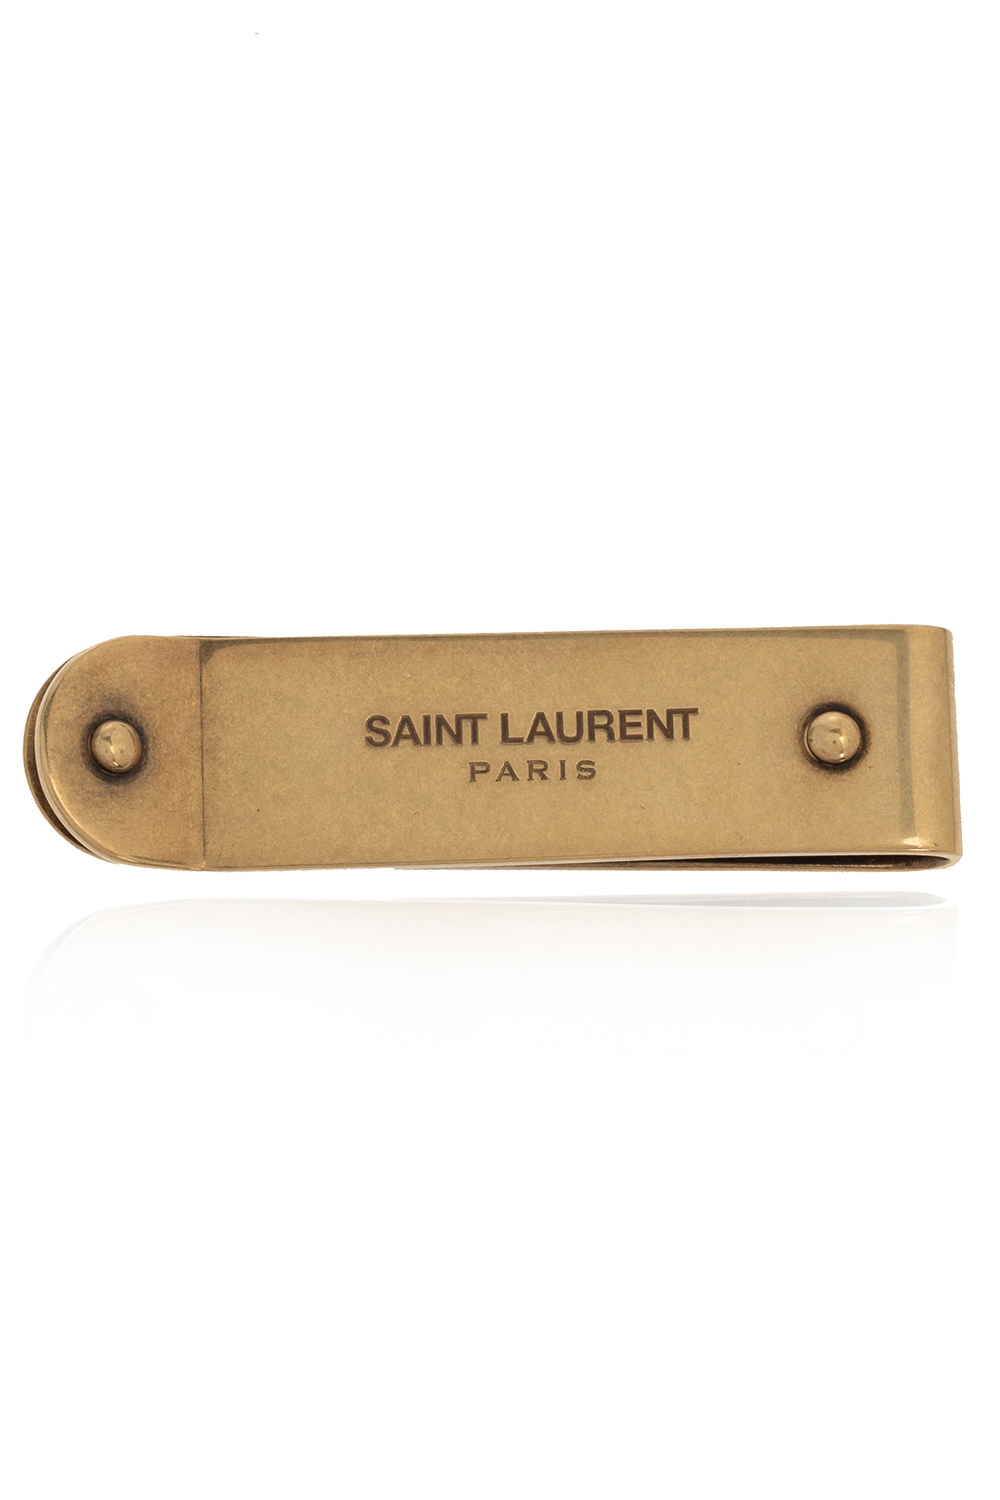 Saint Laurent Money clip